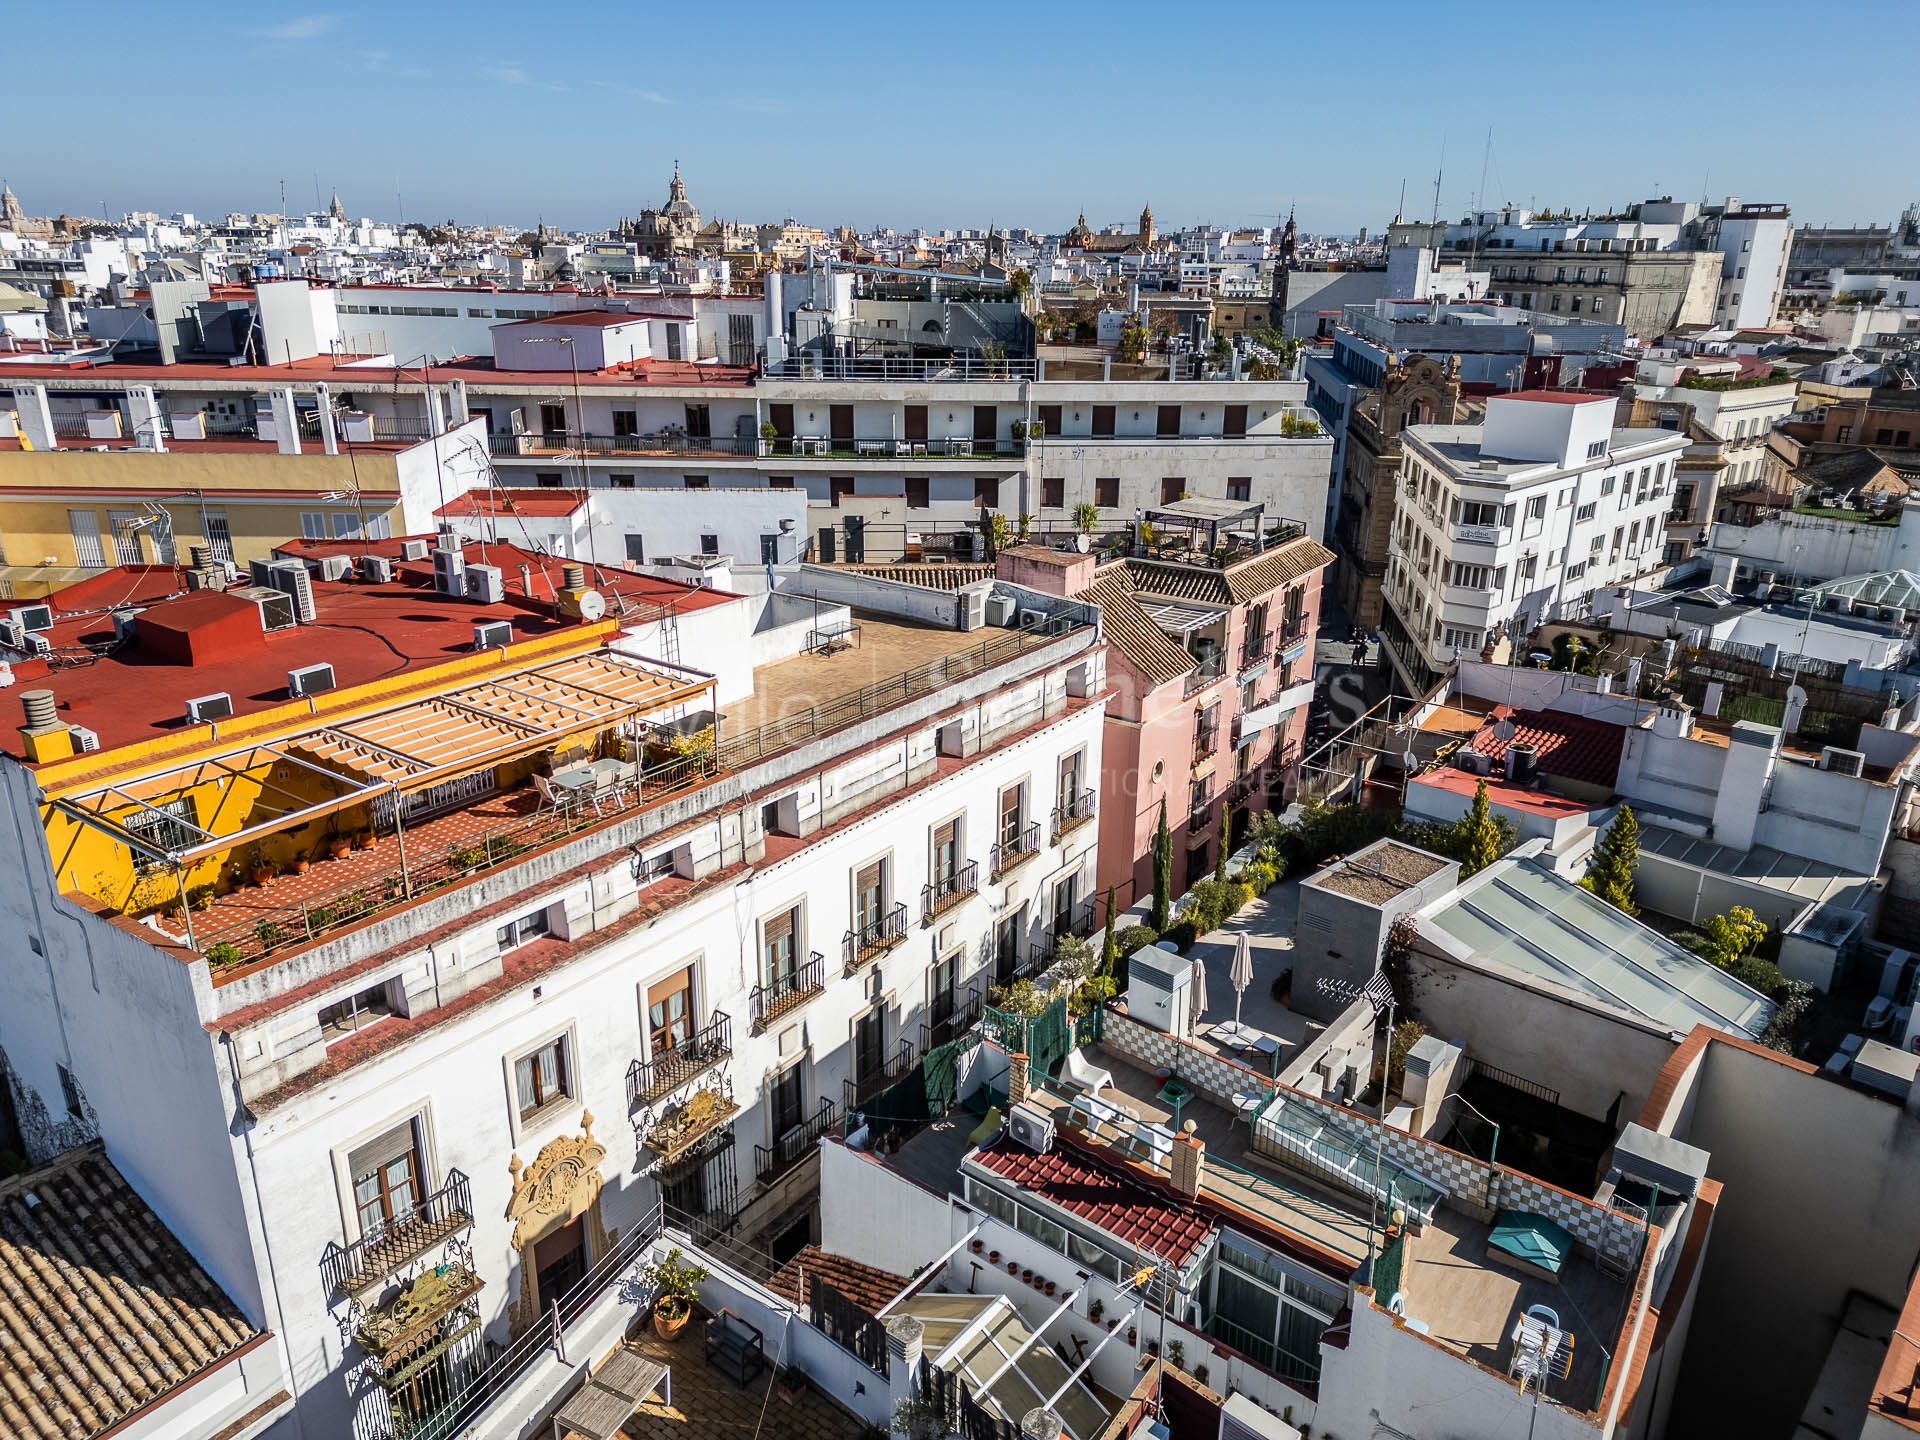 Inmueble ubicado en el centro de Sevilla con destacados balcones orientados a la calle Zaragoza.